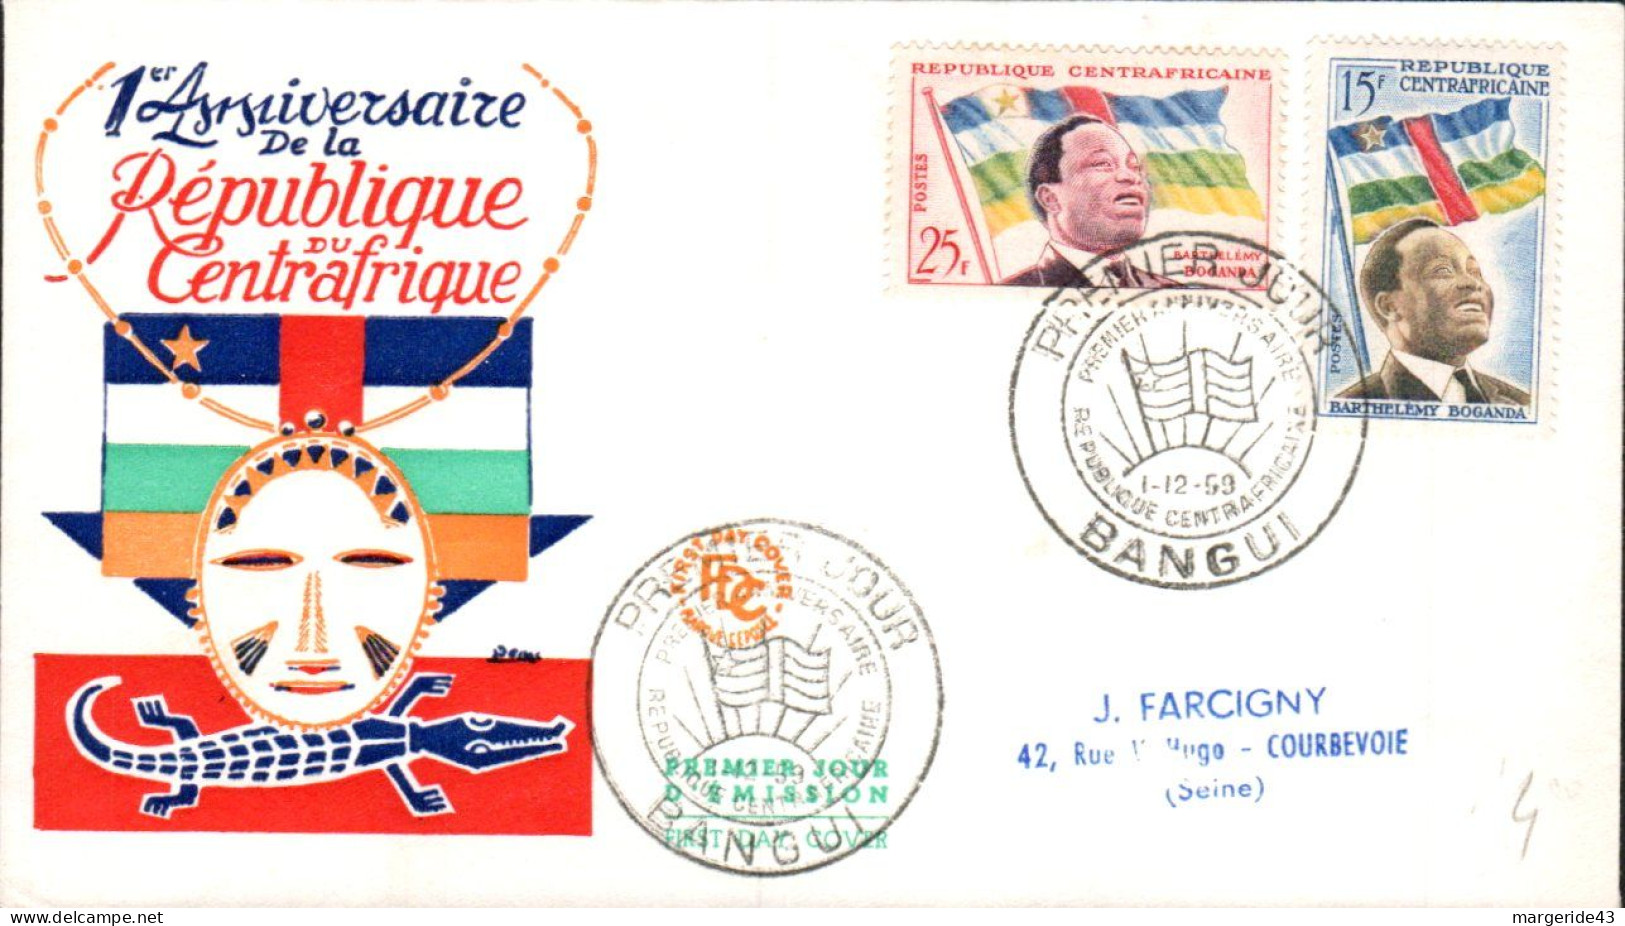 CENTRAFRIQUE FDC 1959 UN AN REPUBLIQUE - Central African Republic